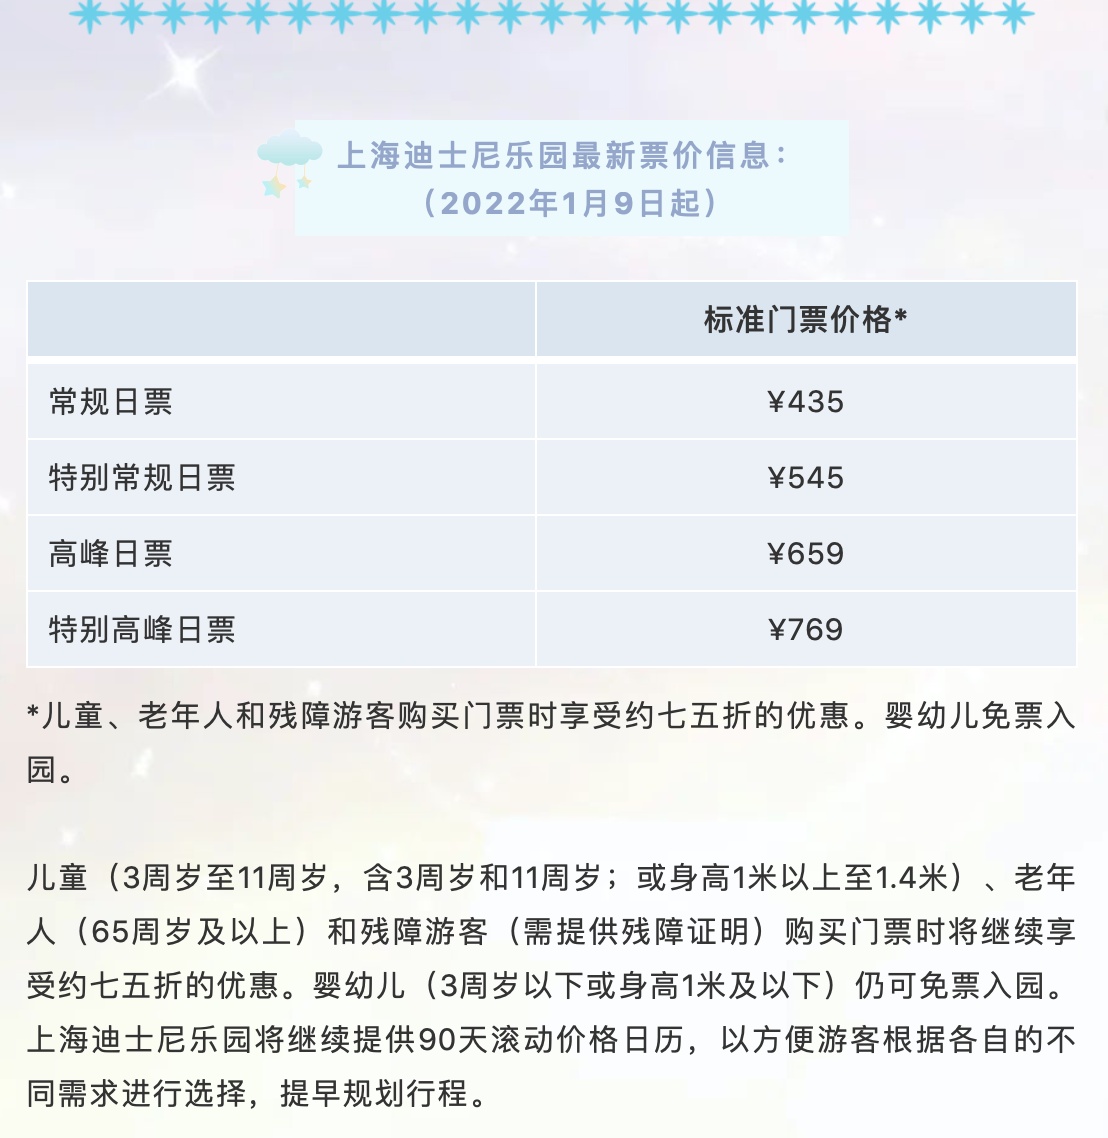 明年1月9日起,上海迪士尼乐园票价调整